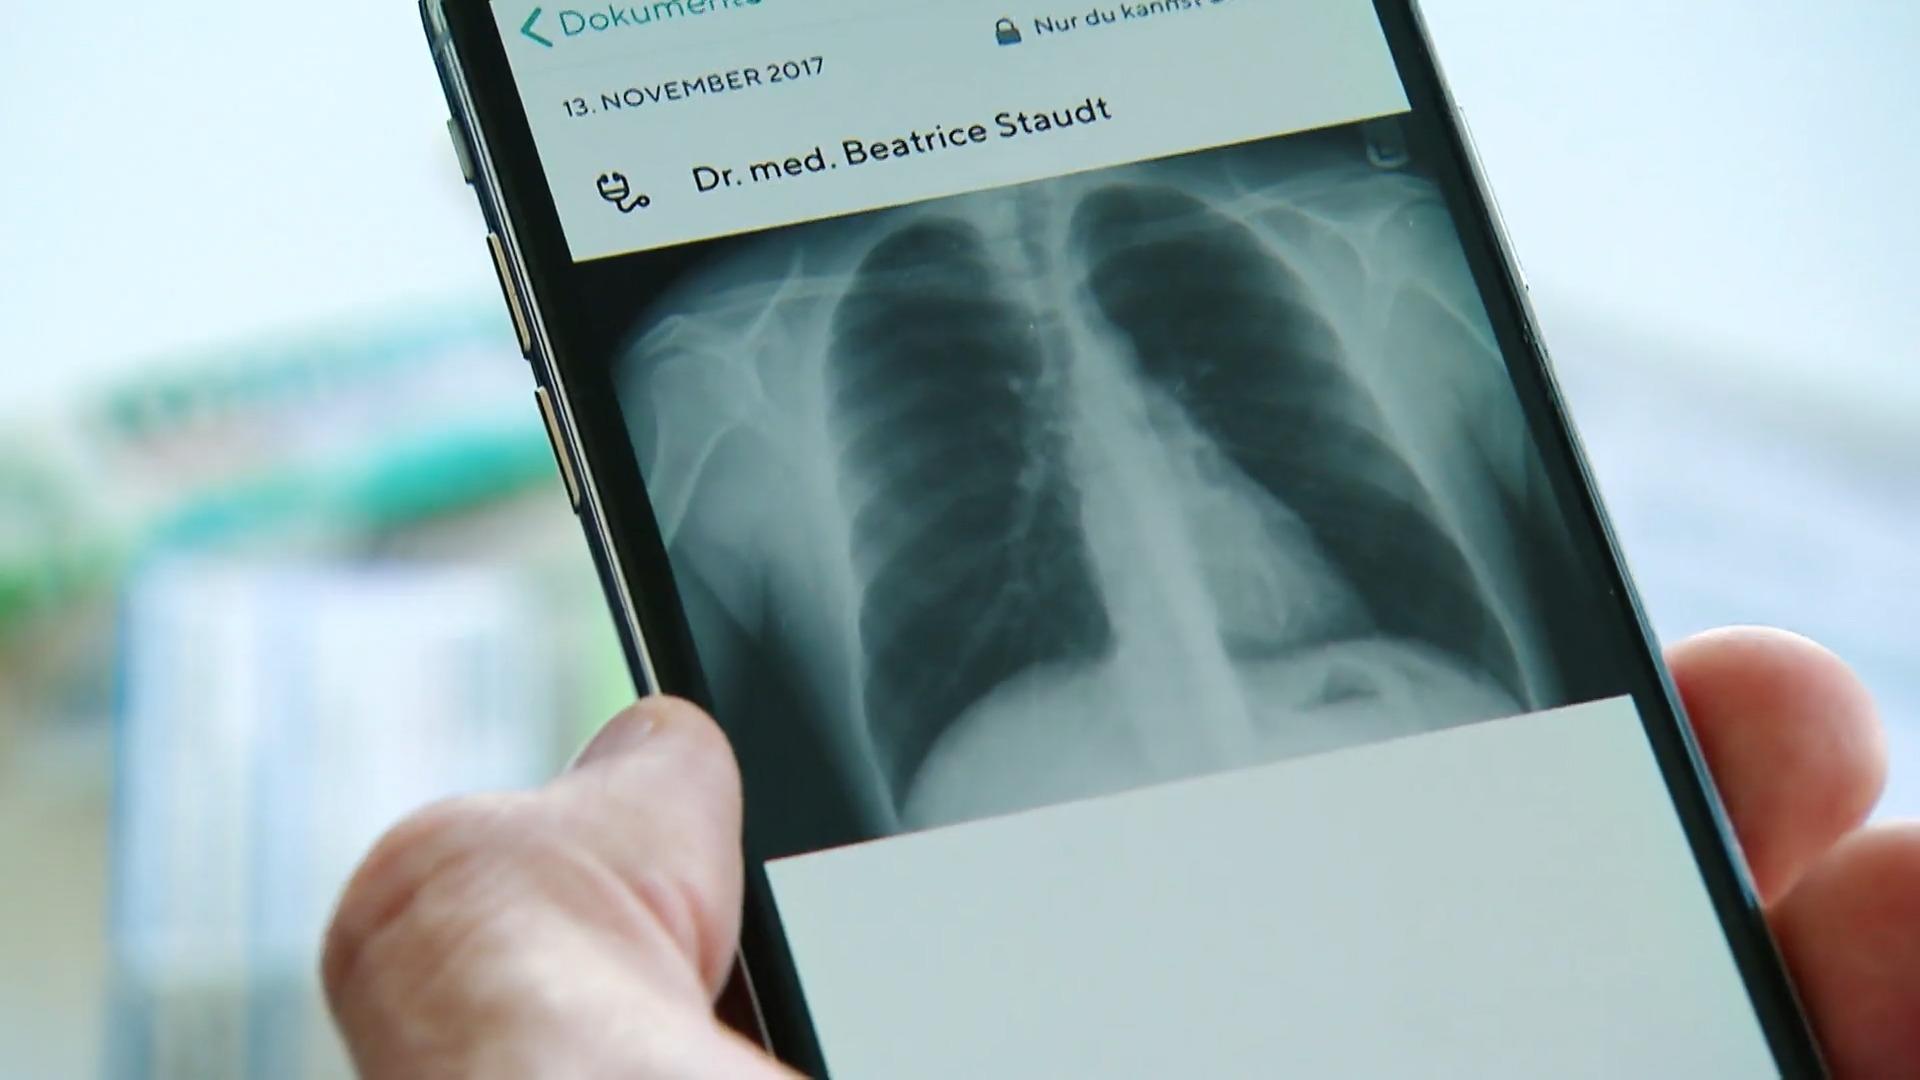 Digitale Patientenakte wird verbindlich für alle eingeführt Vorteile für Patienten und Ärzte